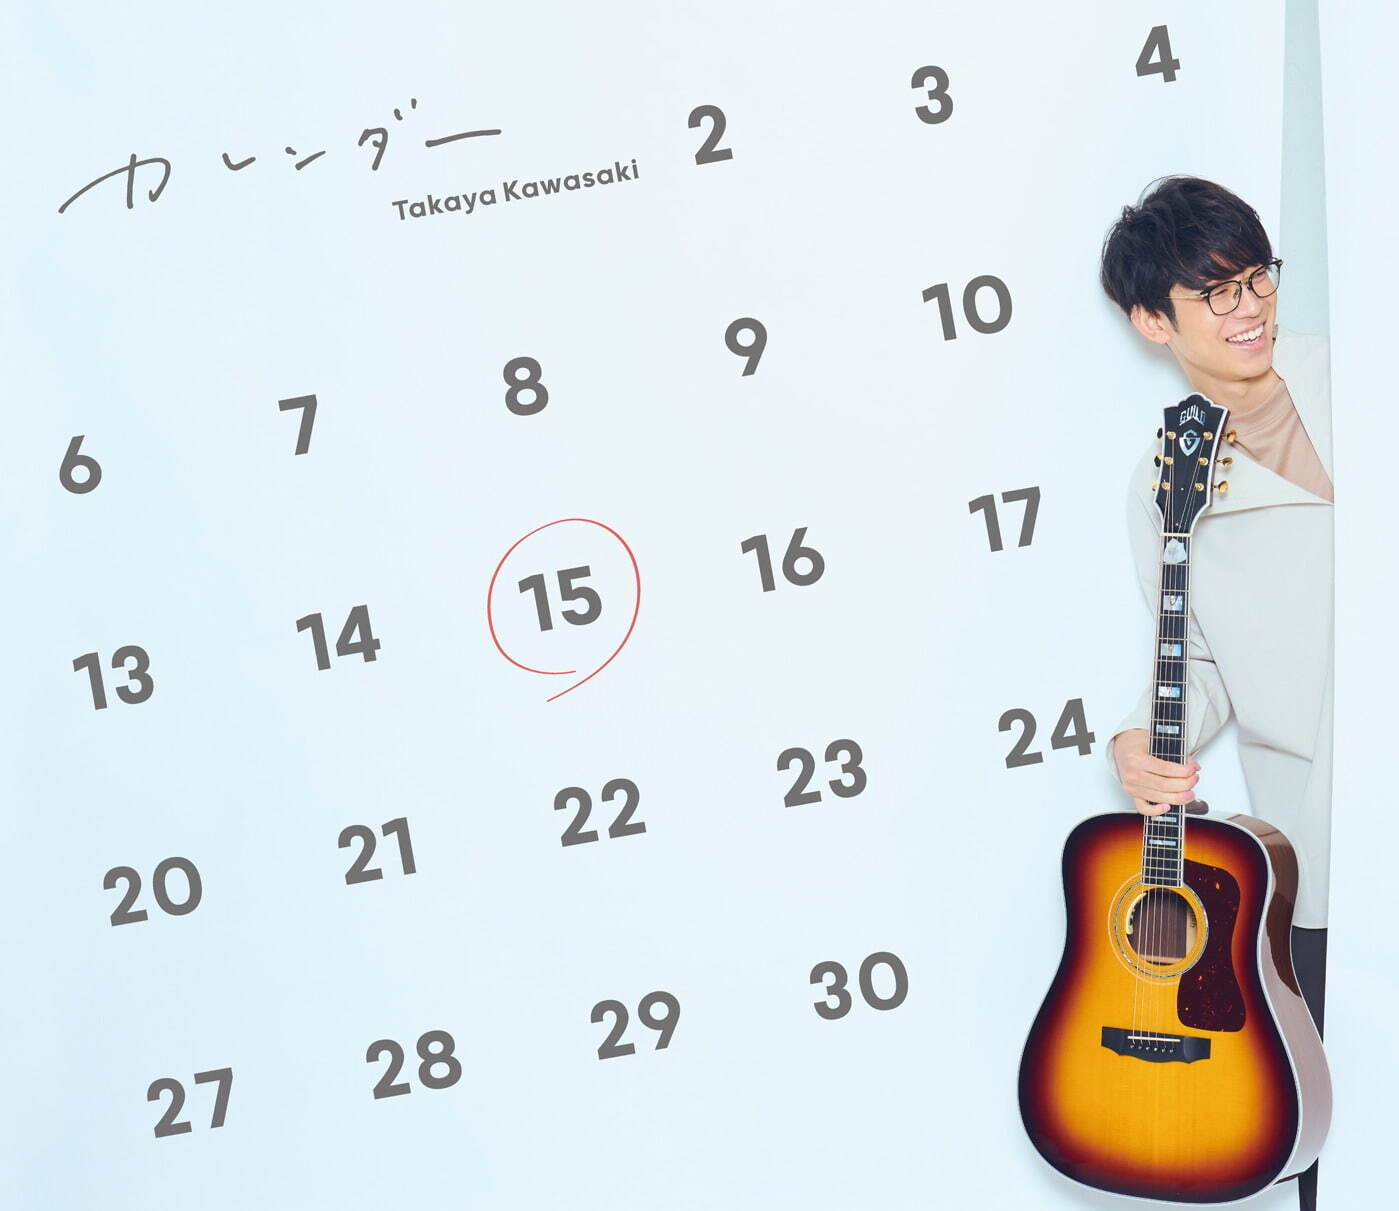 川崎鷹也 最新CDアルバム『カレンダー』初回限定盤(CD+DVD) 3,200円